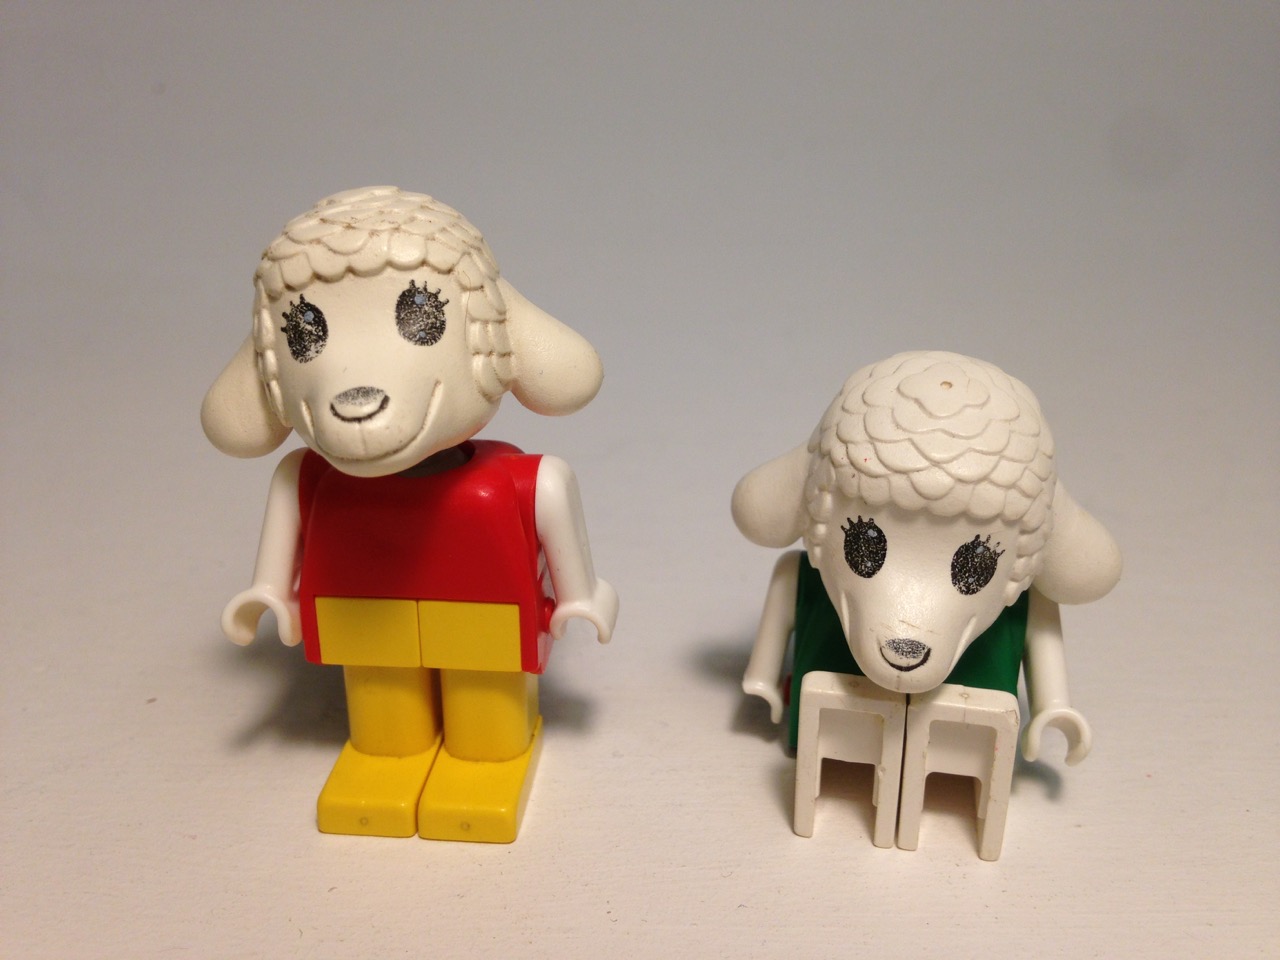 LE019 LEGO 2x FABULAND SHEEP/LAMB FIGURES